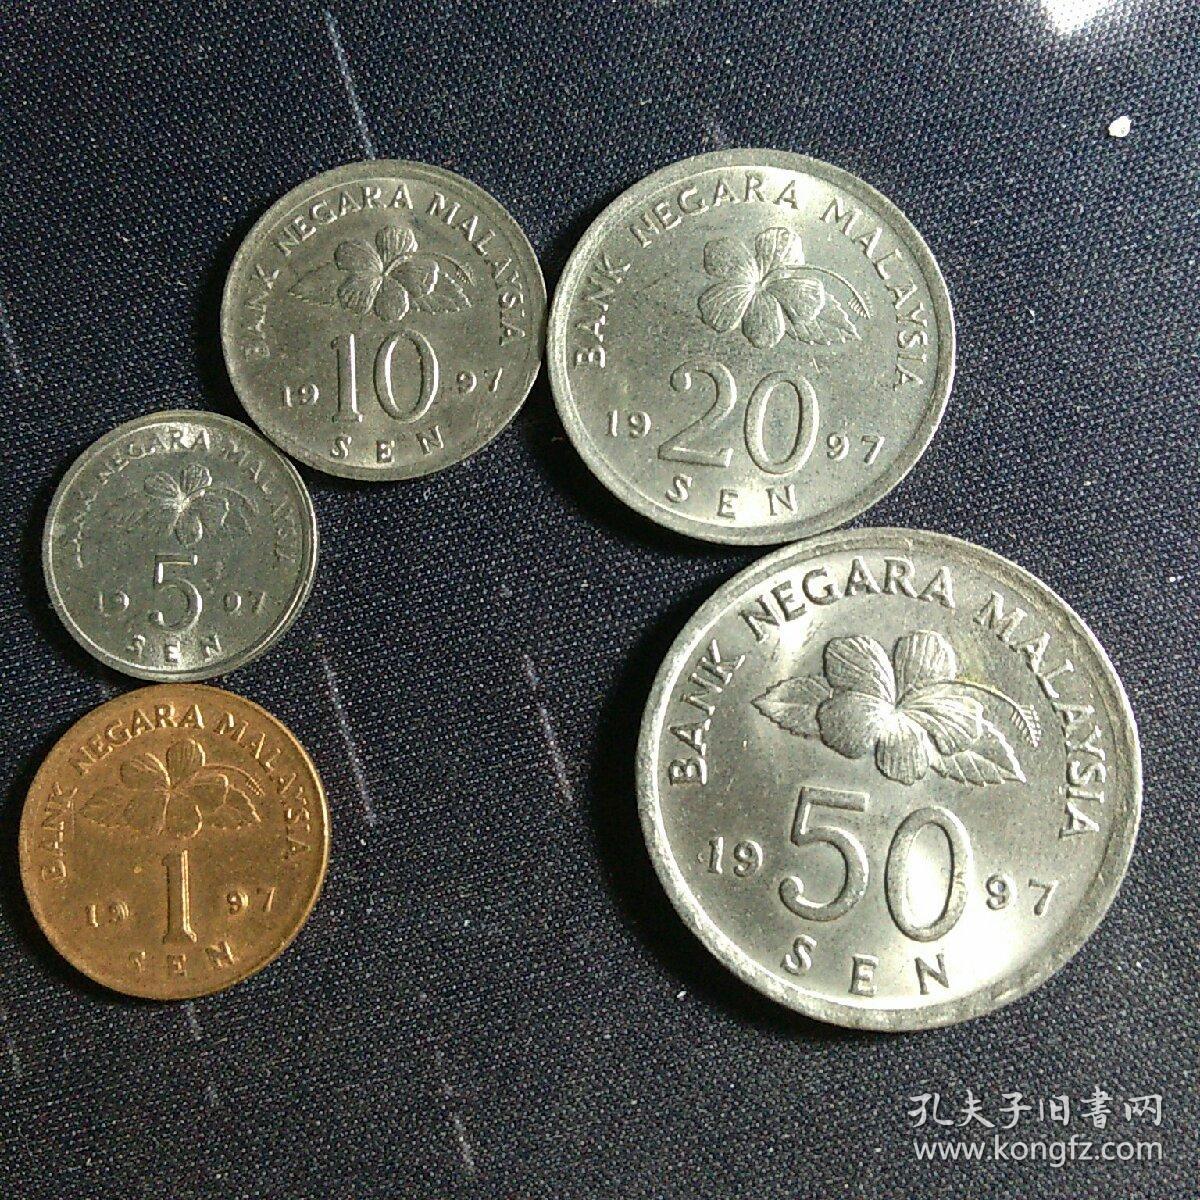 外国硬币马来西亚50仙大币满五十元包邮-价格:2元-se71907088-外国钱币-零售-7788收藏__收藏热线